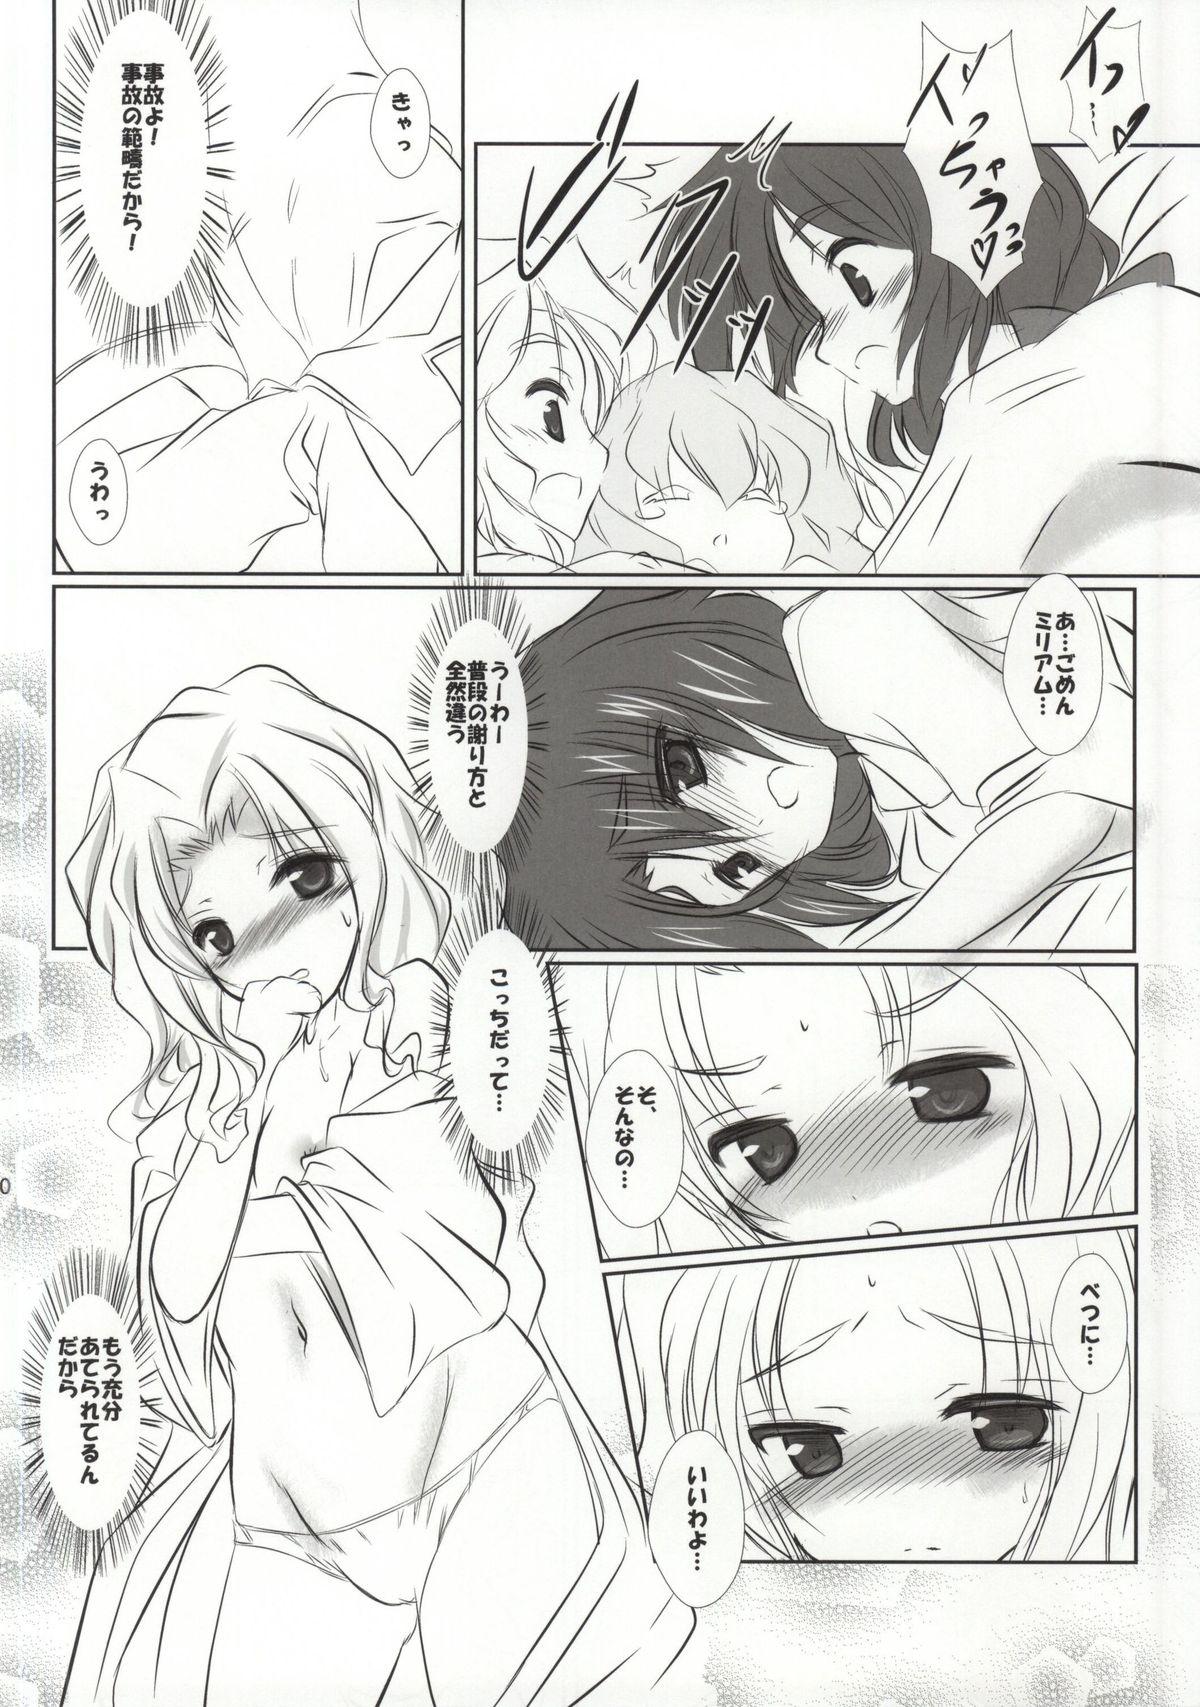 Climax Rekishi Saigen Yarimashou Ura 2 - Kyoukai senjou no horizon Scandal - Page 9